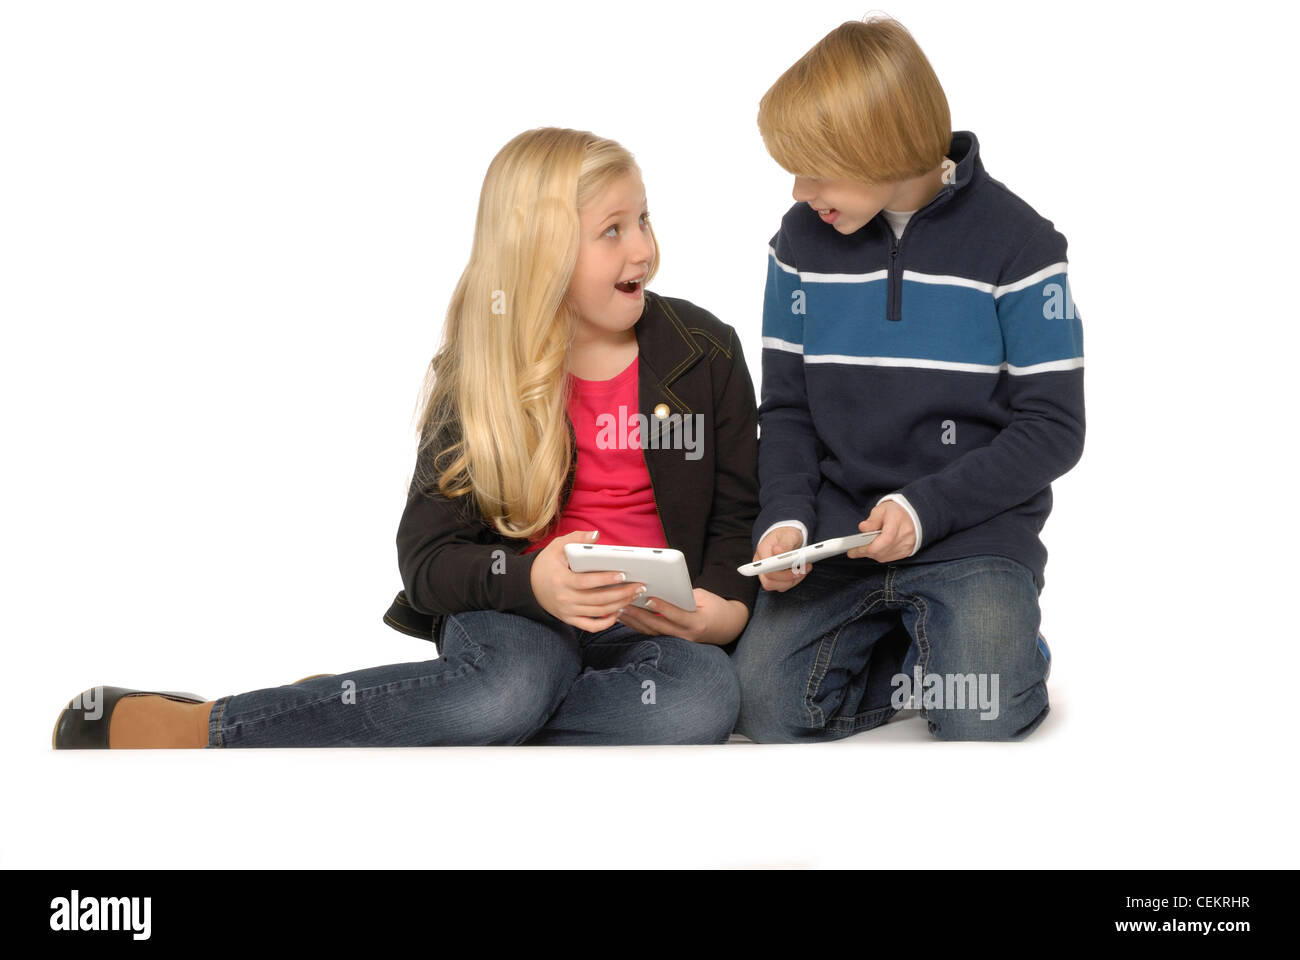 Zehn Jahre altes Mädchen und elf Jahre alten Jungen mit Tablet-PCs oder eBook-Readern und lächelnd. Stockfoto